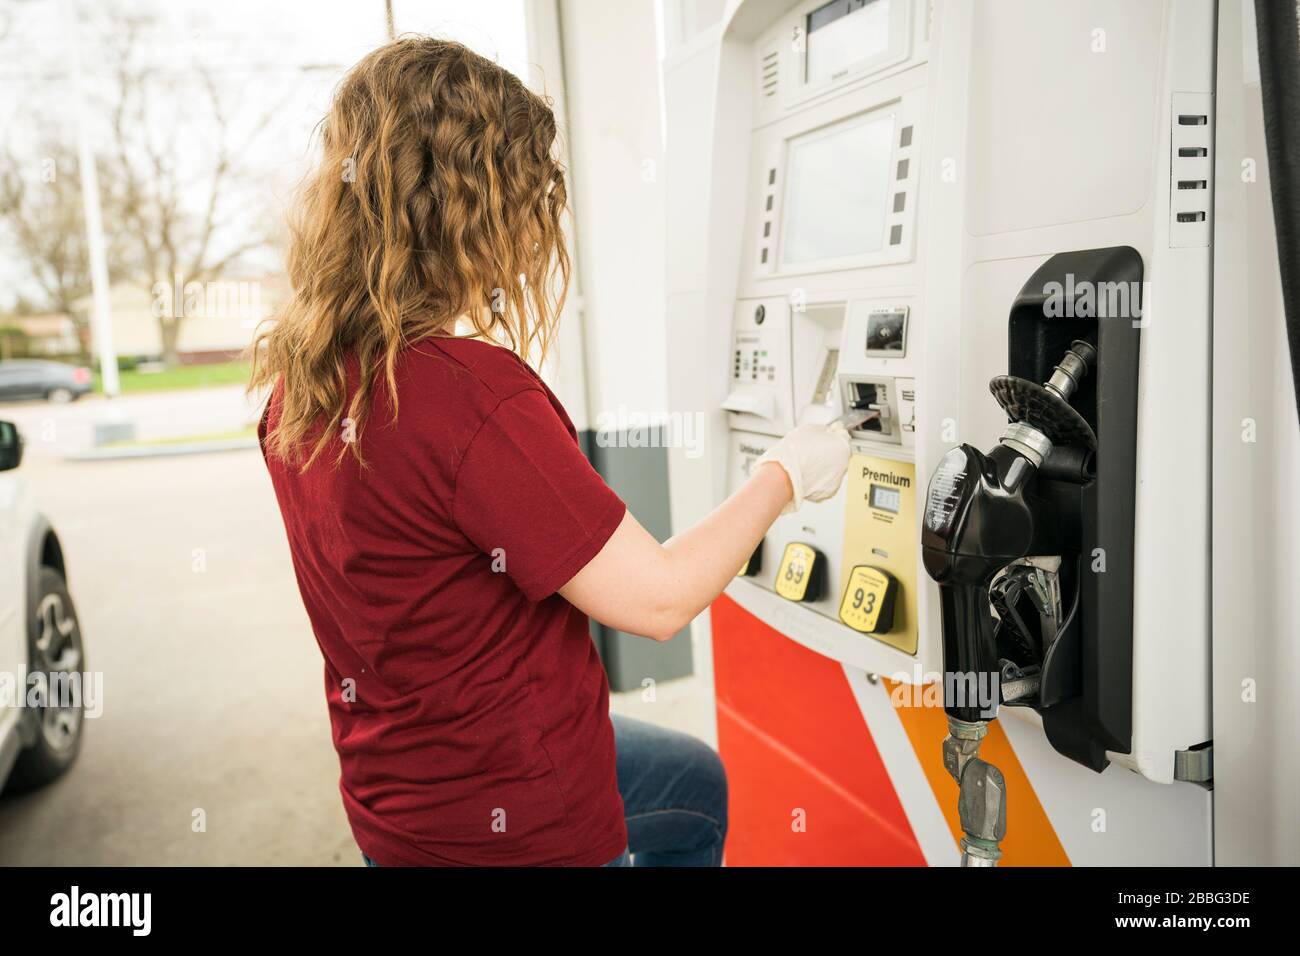 Indiana, USA - 24. März 2020: Eine blonde Frau, die Schutzhandschuhe trägt, füllt ihr Auto während des Corona-Virus COV mit Benzin an der Tankstelle Stockfoto